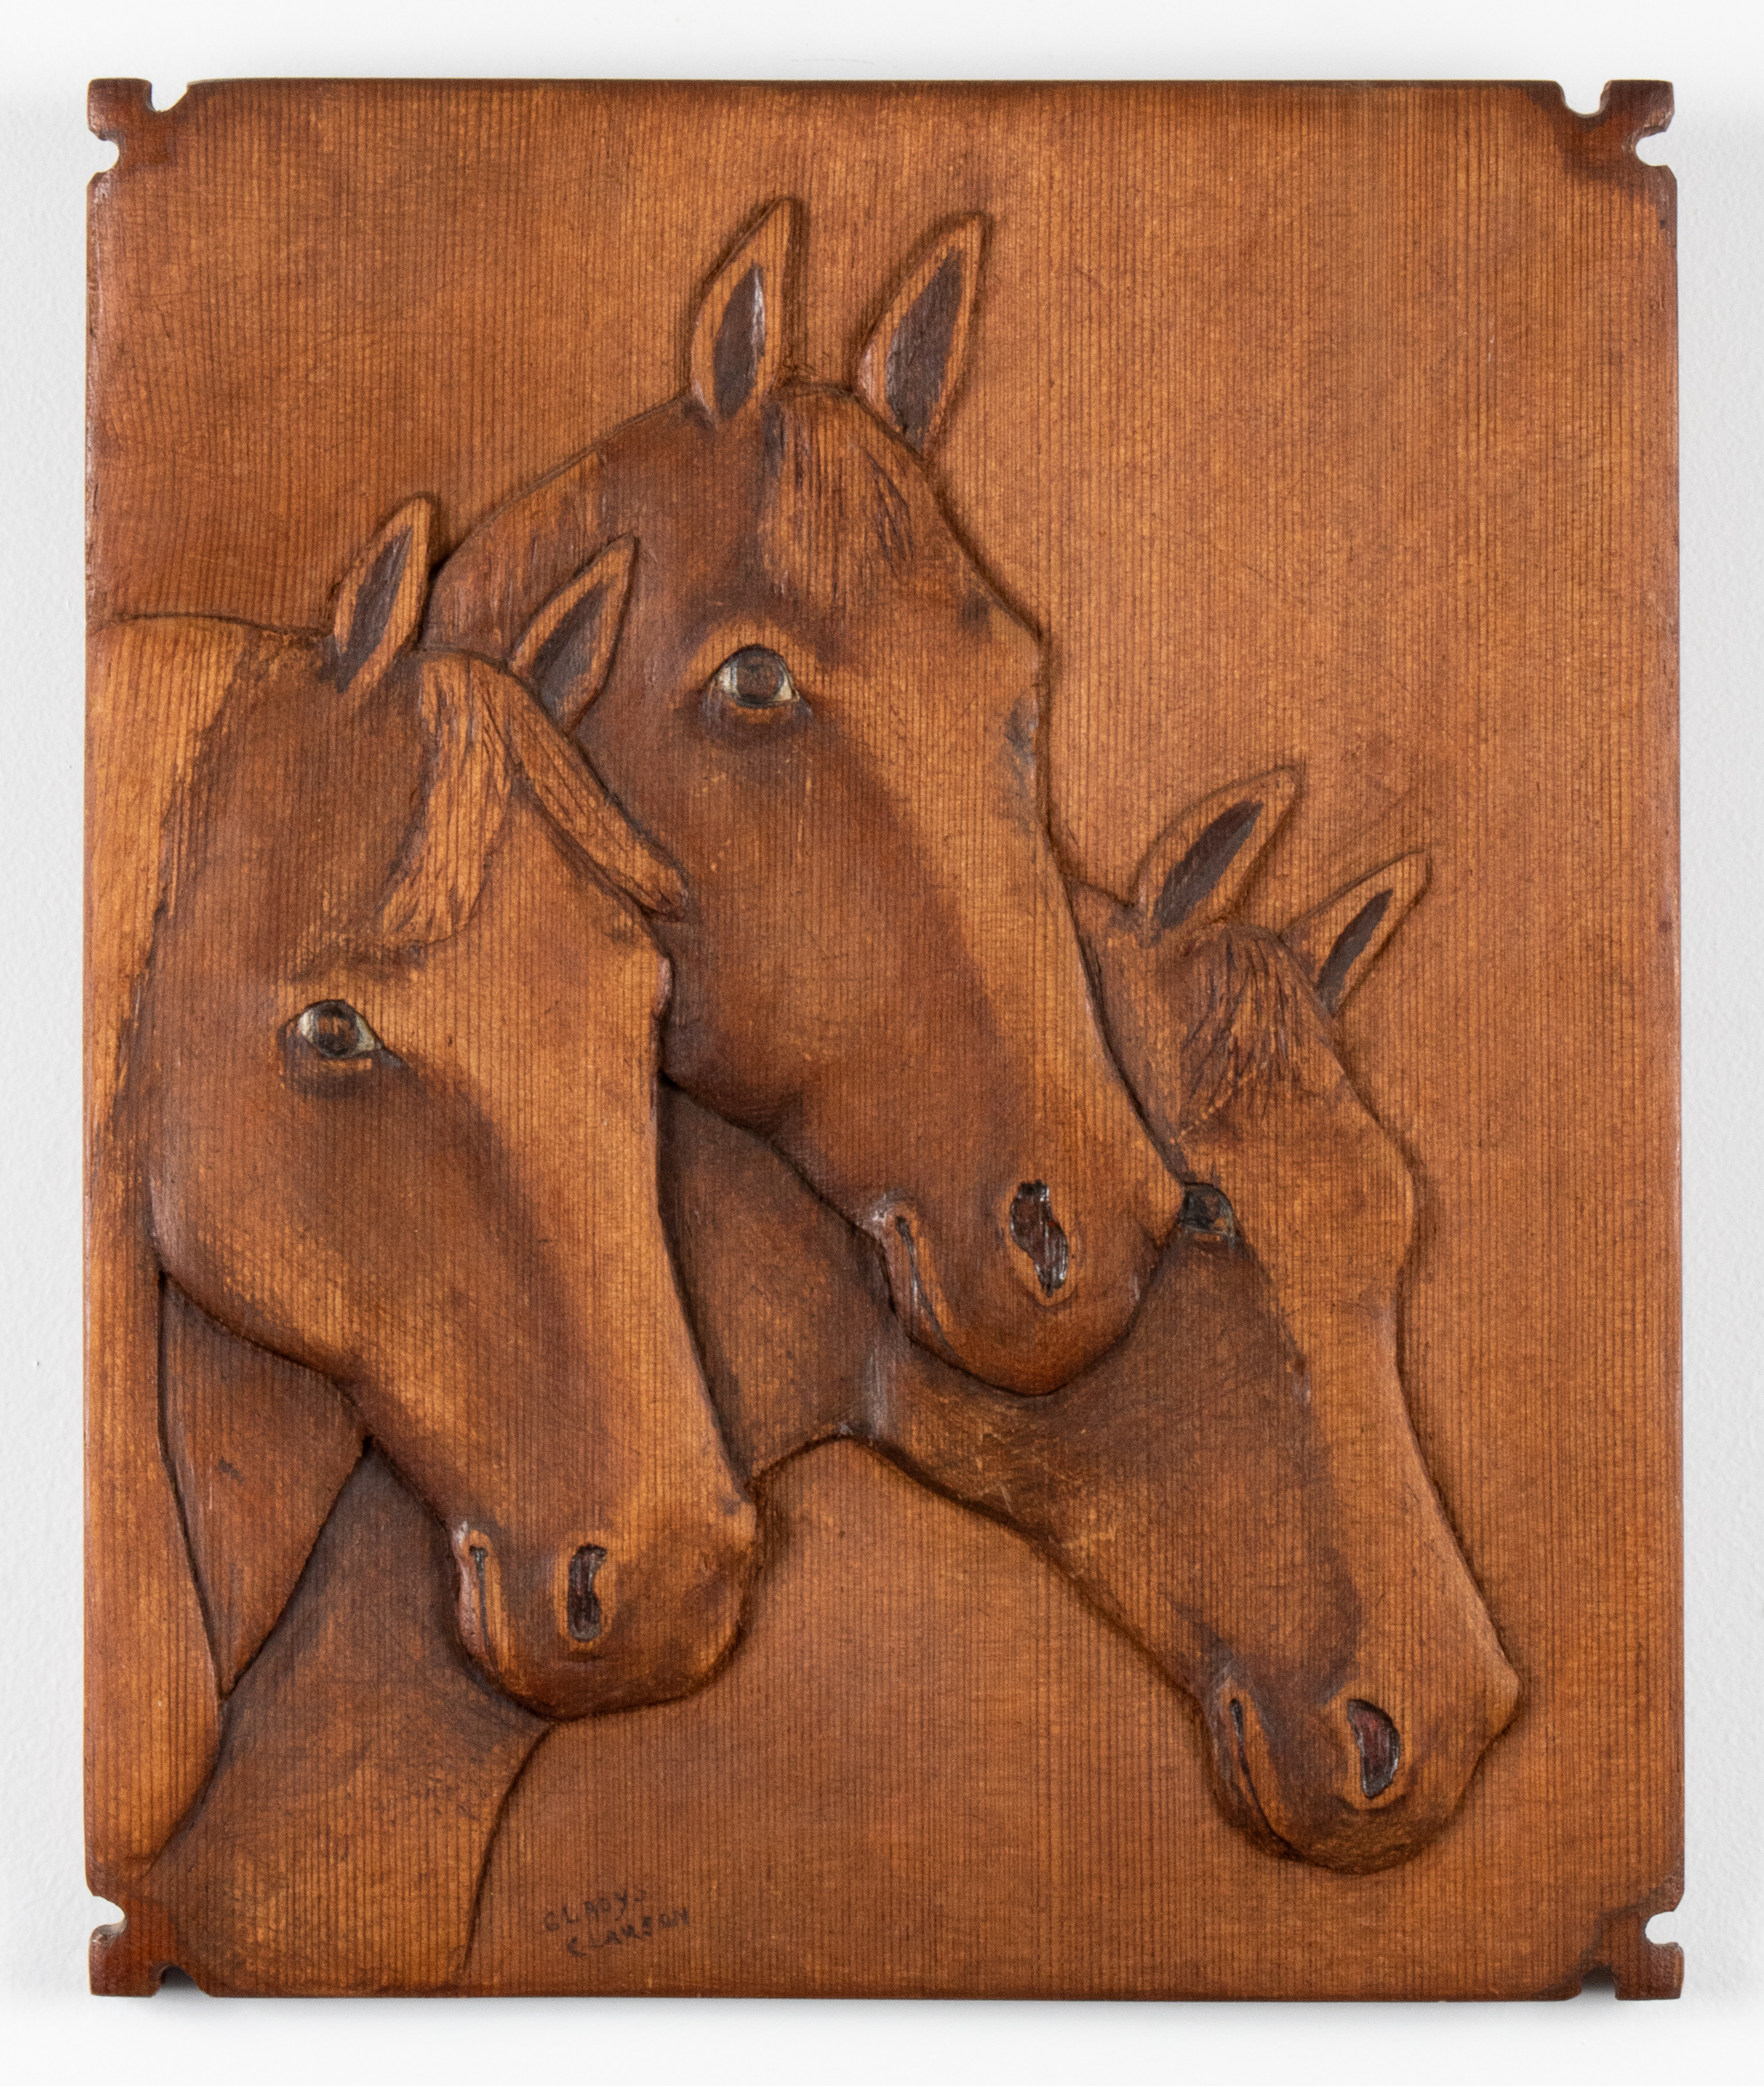 GLADYS CLAUSON "HORSES" FOLK ART